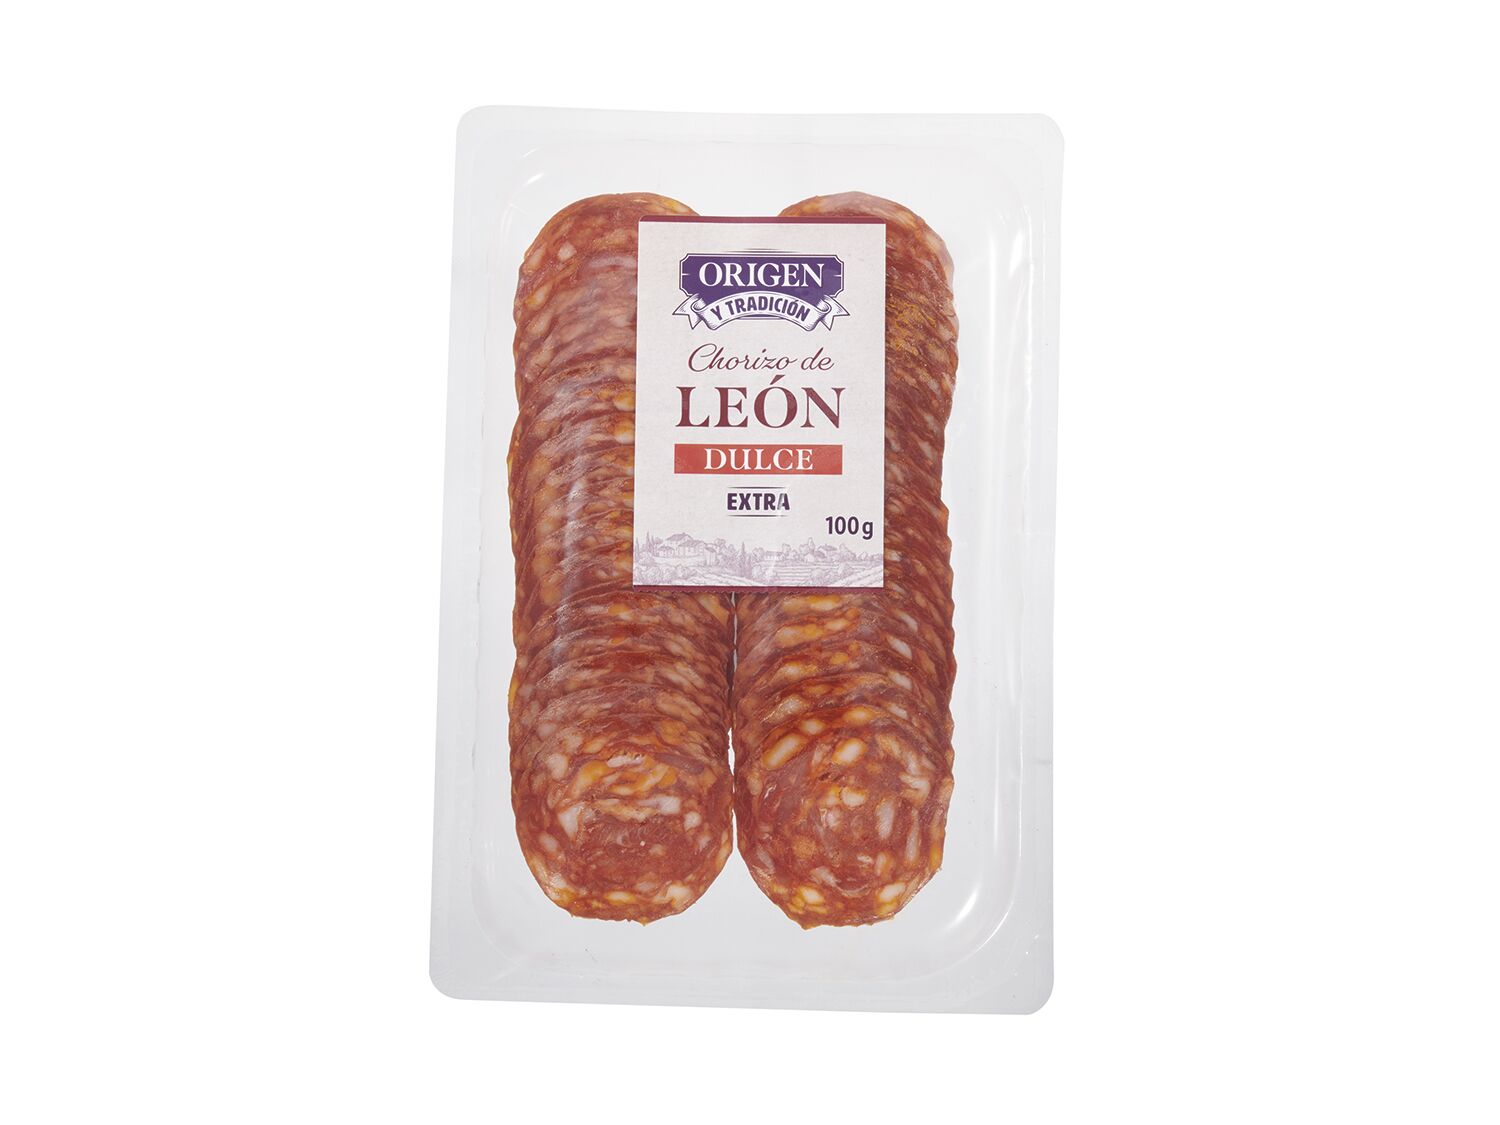 Chorizo de León